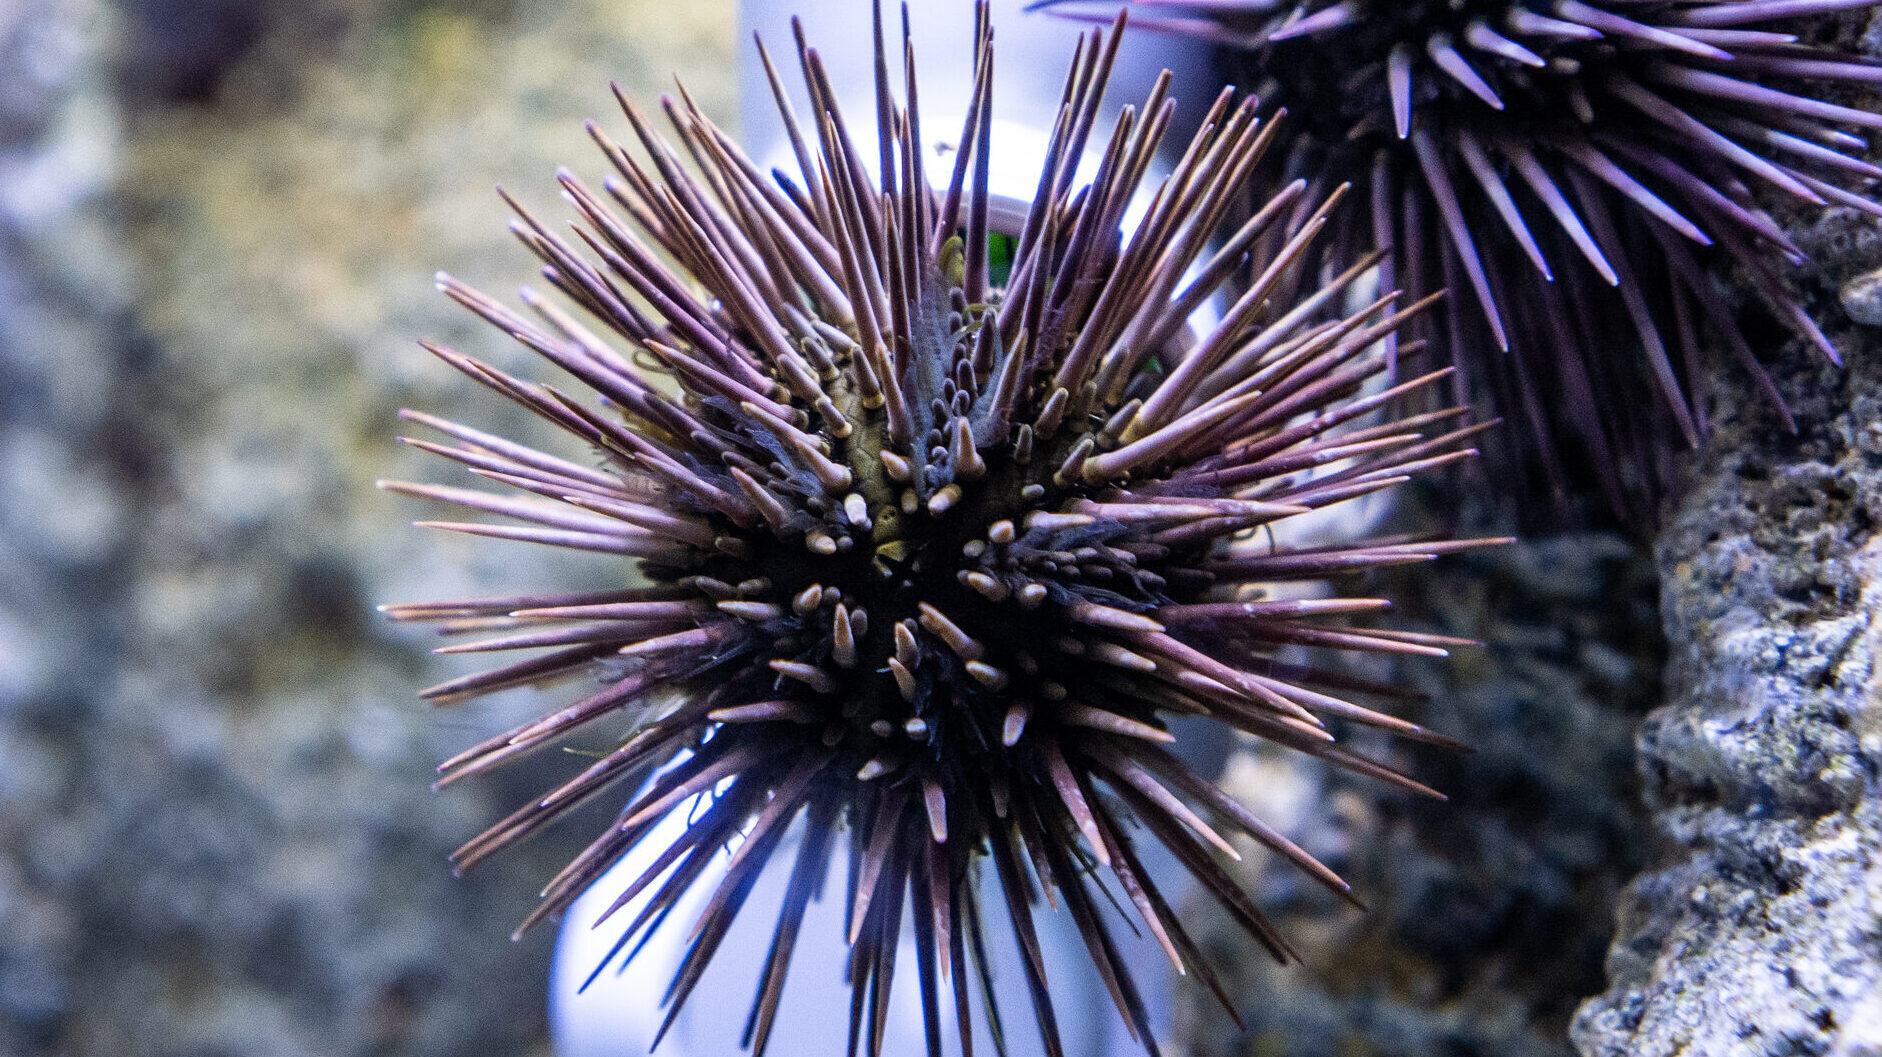 A purple urchin in its exhibit.